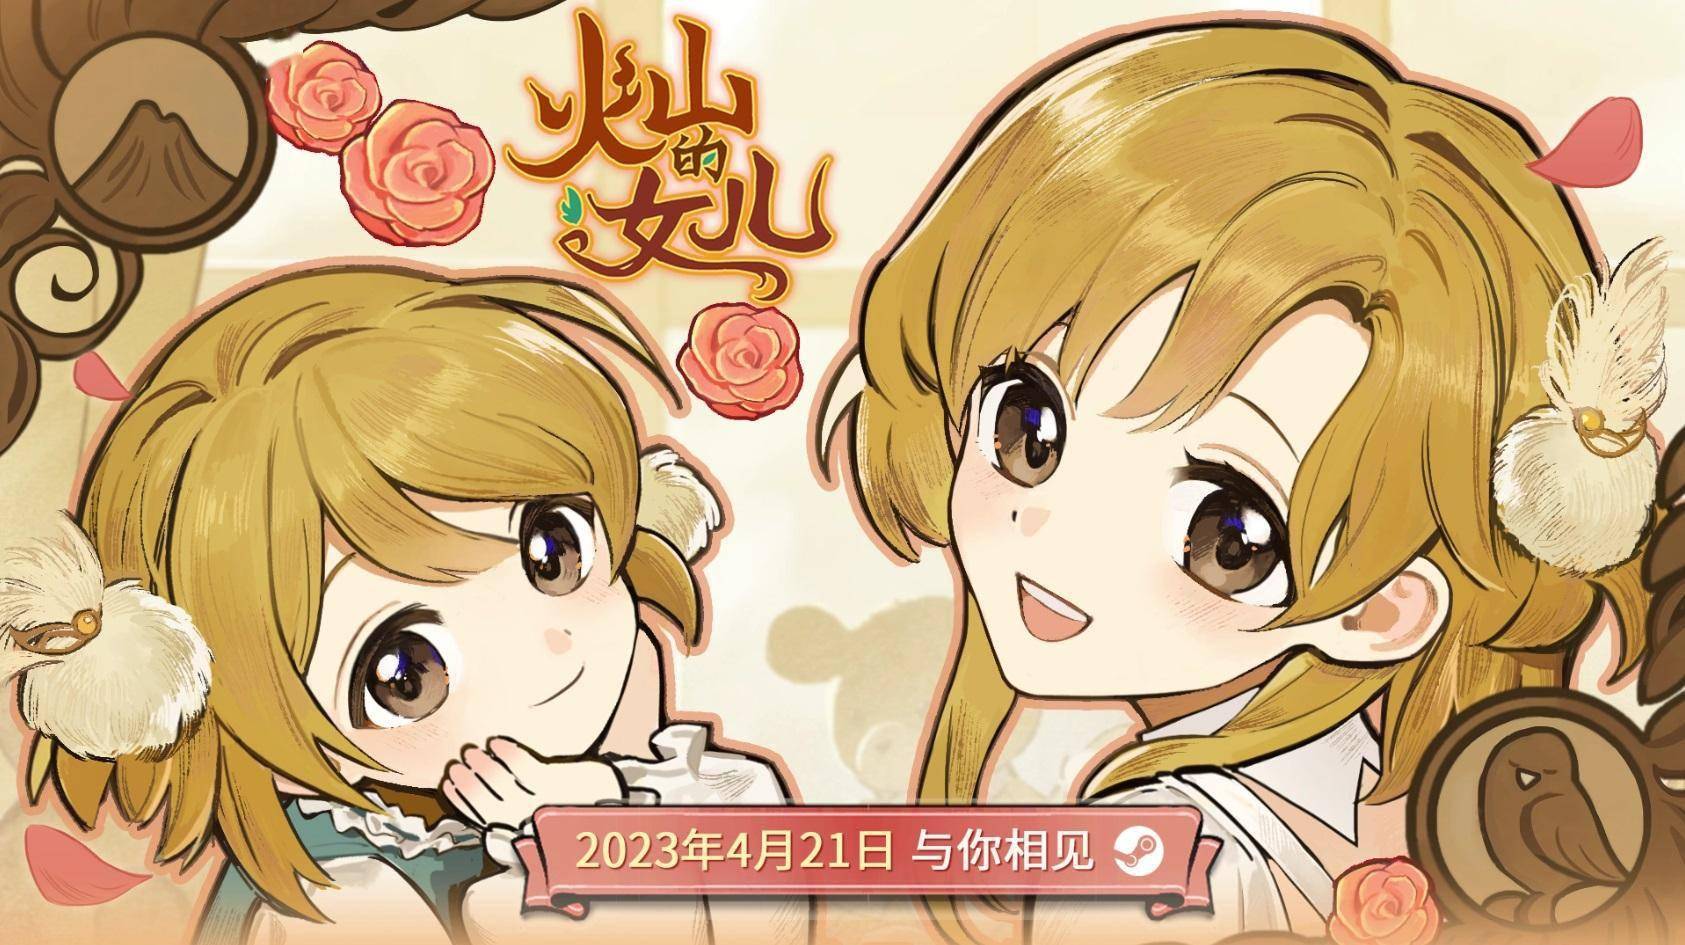 日语配音狂苹果版:养成游戏《火山的女儿》4月21日发售 支持中日双语配音